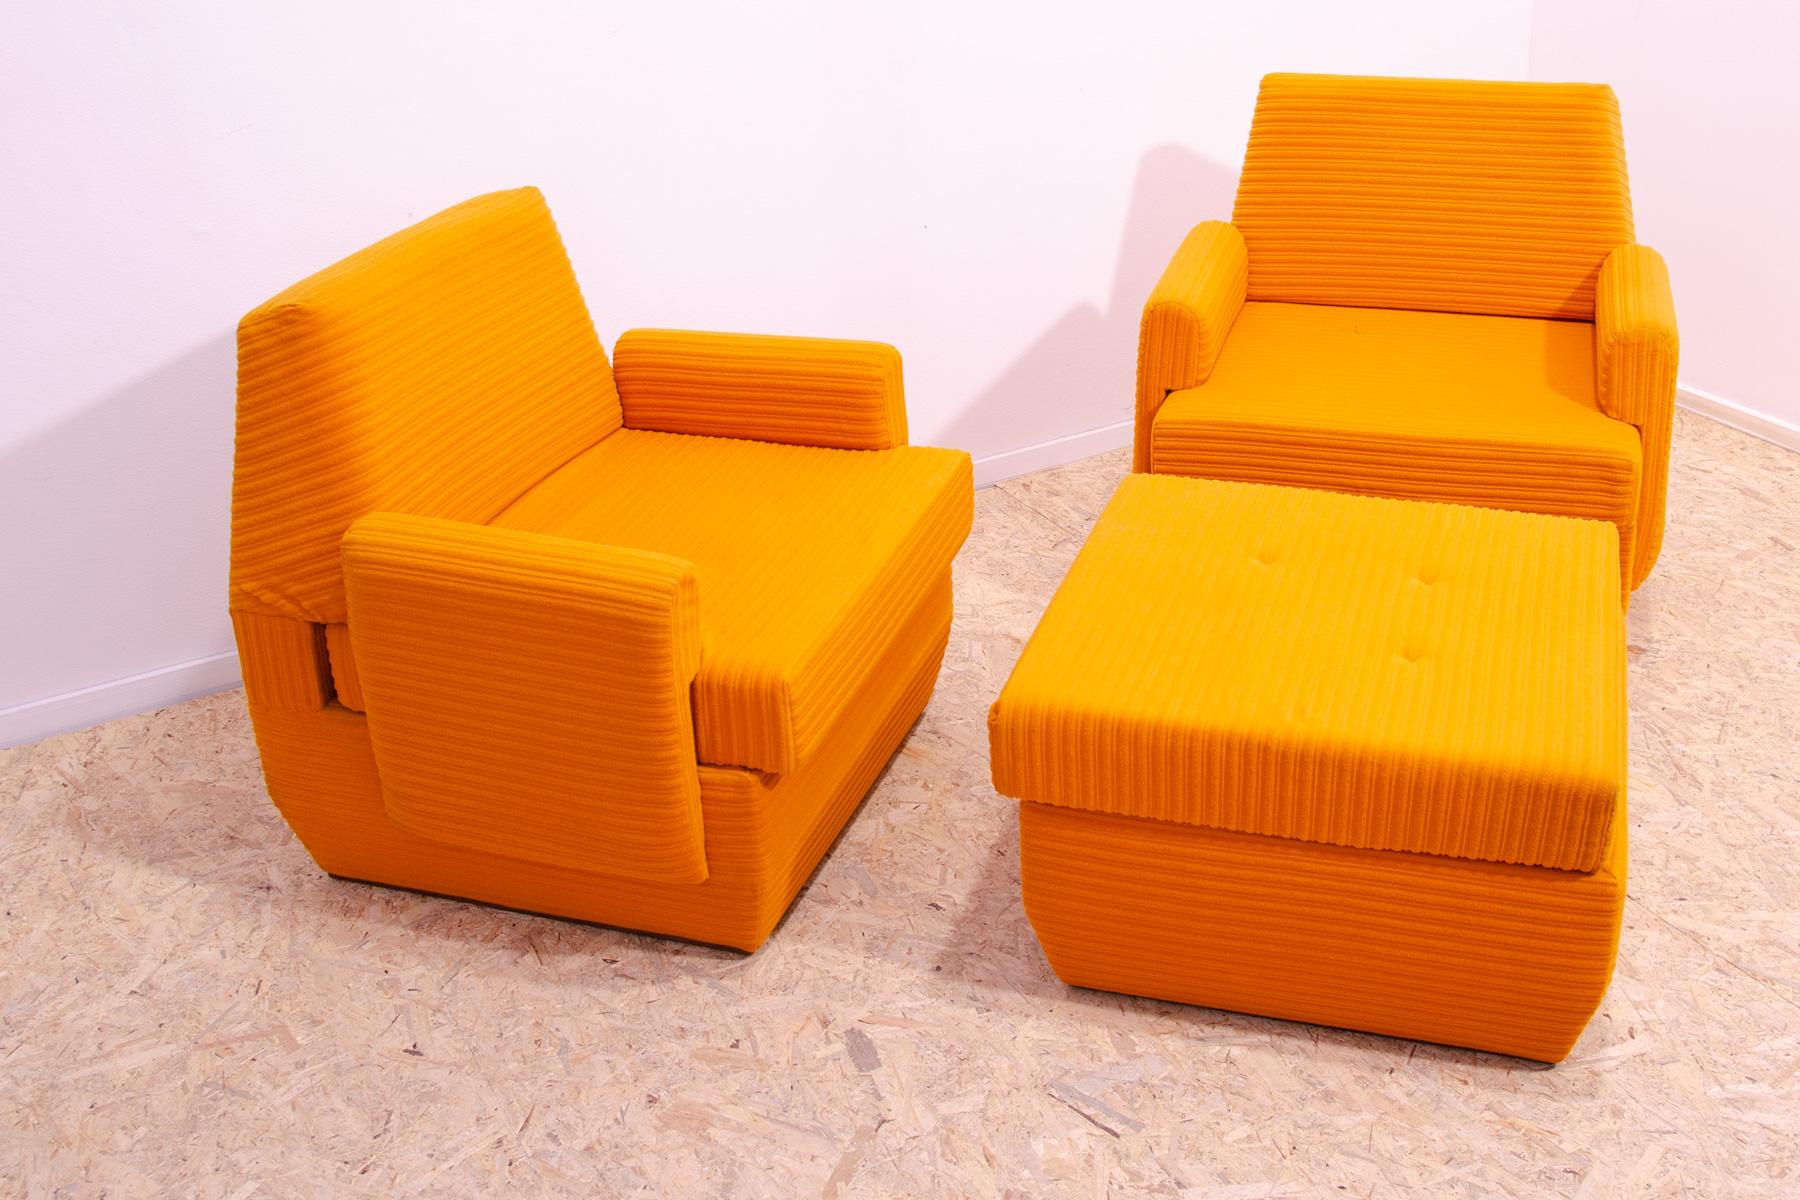 Dieses Set gehörte zu einem Wohnzimmer-Set der Firma JITONA aus den 1970er Jahren. Es besteht aus zwei Sesseln und einem Puff. Man kann es auch einfach in ein Bett verwandeln.
Es ist ein typisches Beispiel für das Möbeldesign der 1970/1980er Jahre